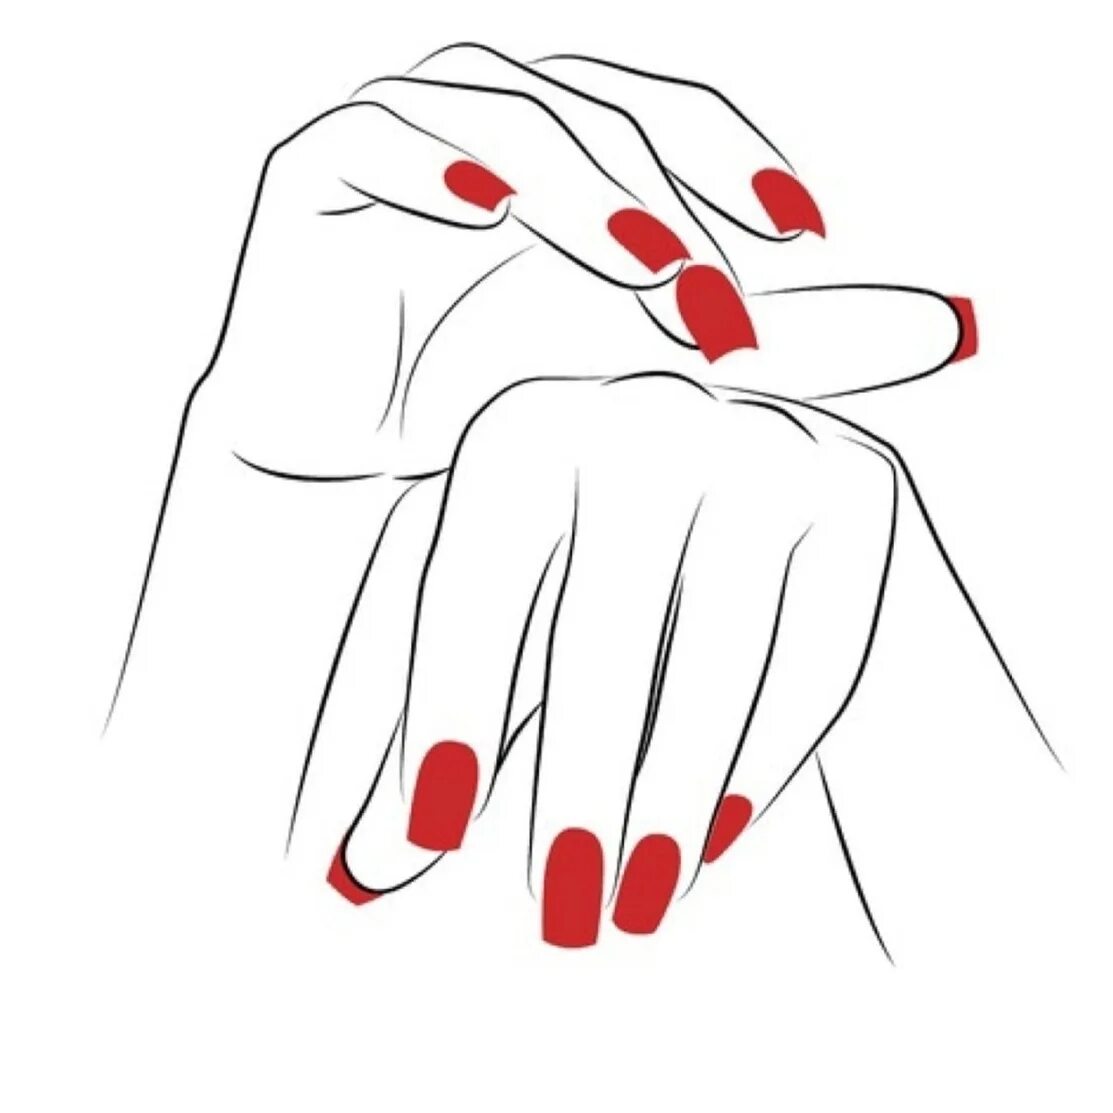 Женская рука с ногтями. Маникюр с рисунком. Силуэт женской руки с маникюром. Силуэт руки с маникюром. Шаблоны для мастера маникюра